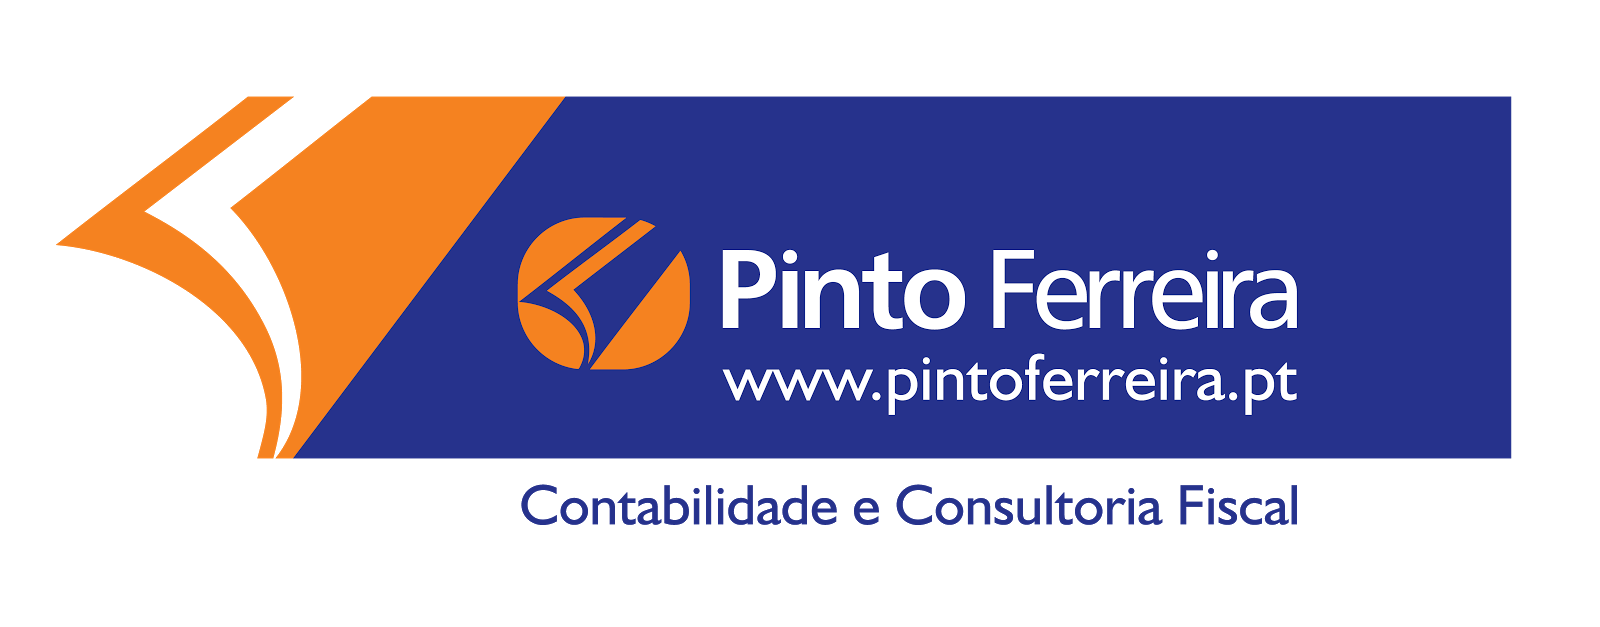 Pinto Ferreira